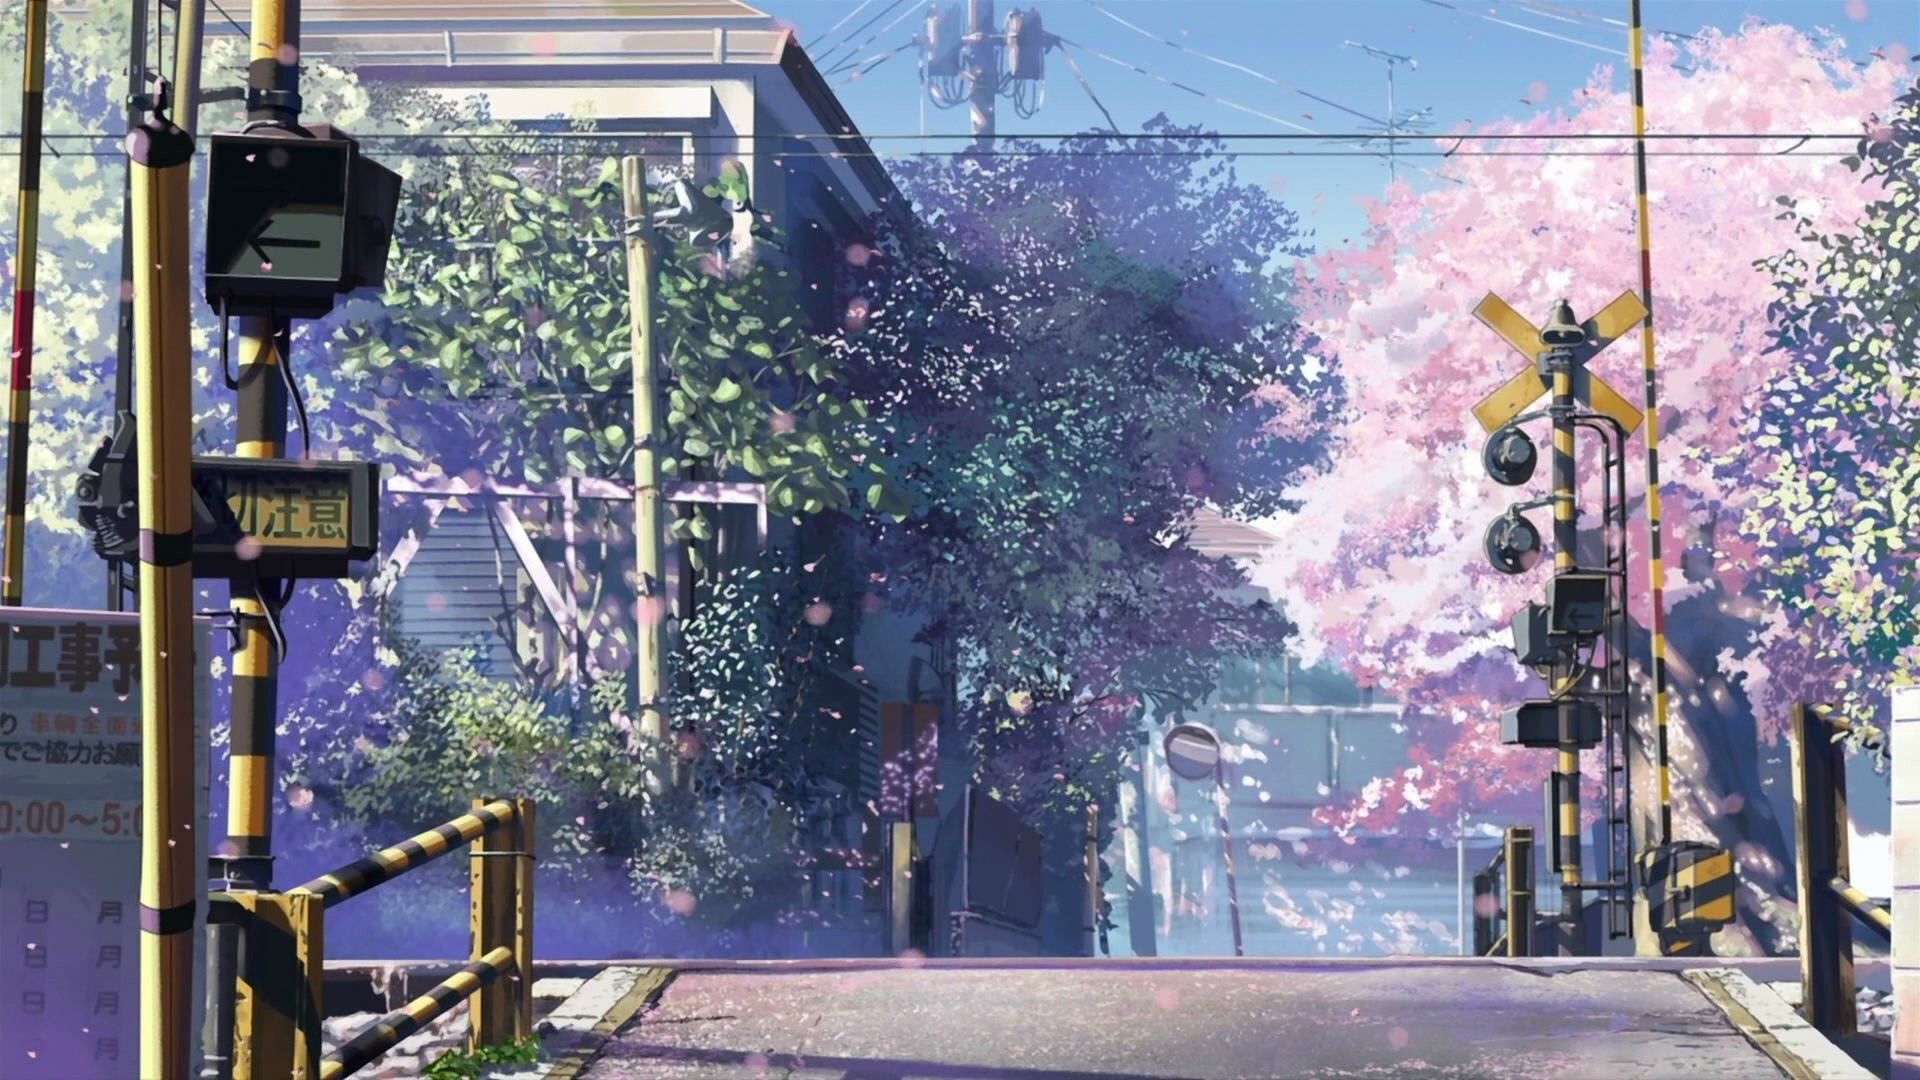 Aesthetic Anime GIF Wallpaper Images  Mk GIFscom